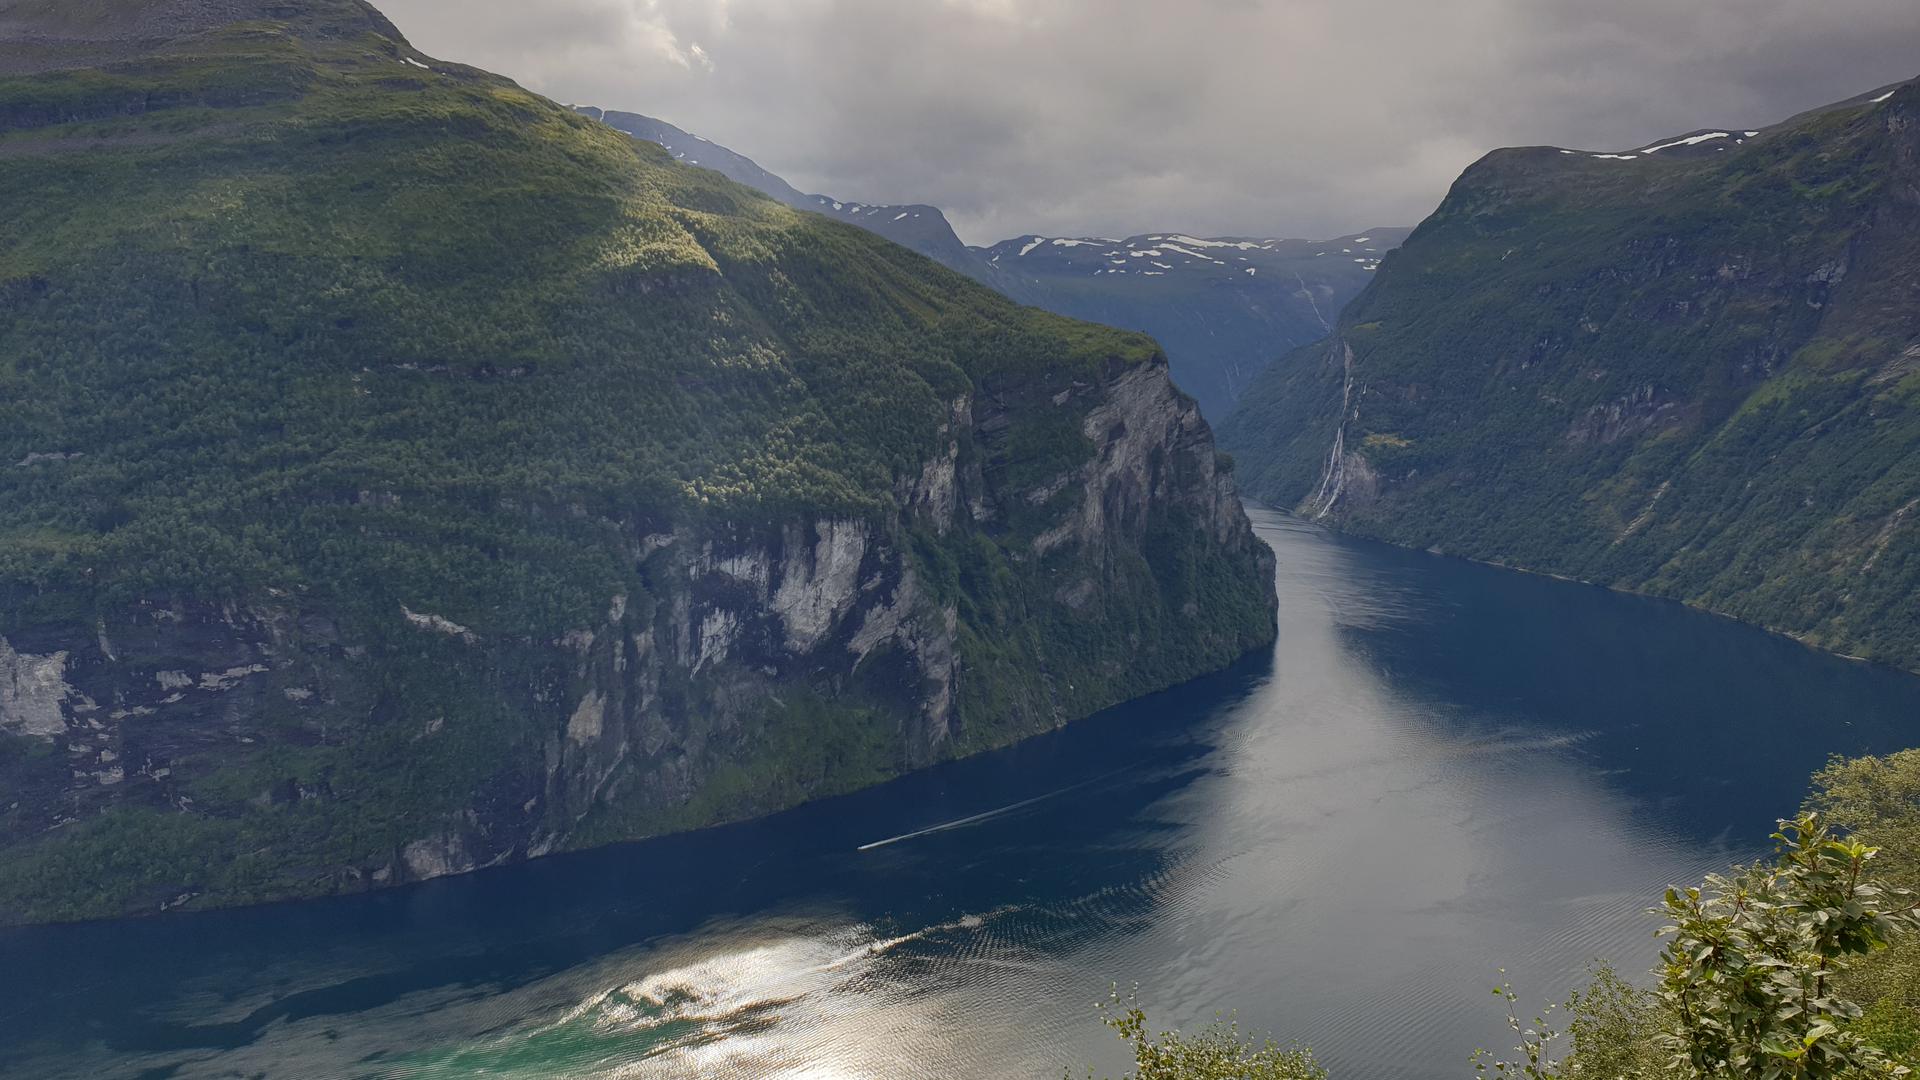 Geirangerfjord in Norwegen von Annette Lang-Heneka aus Bretten.
